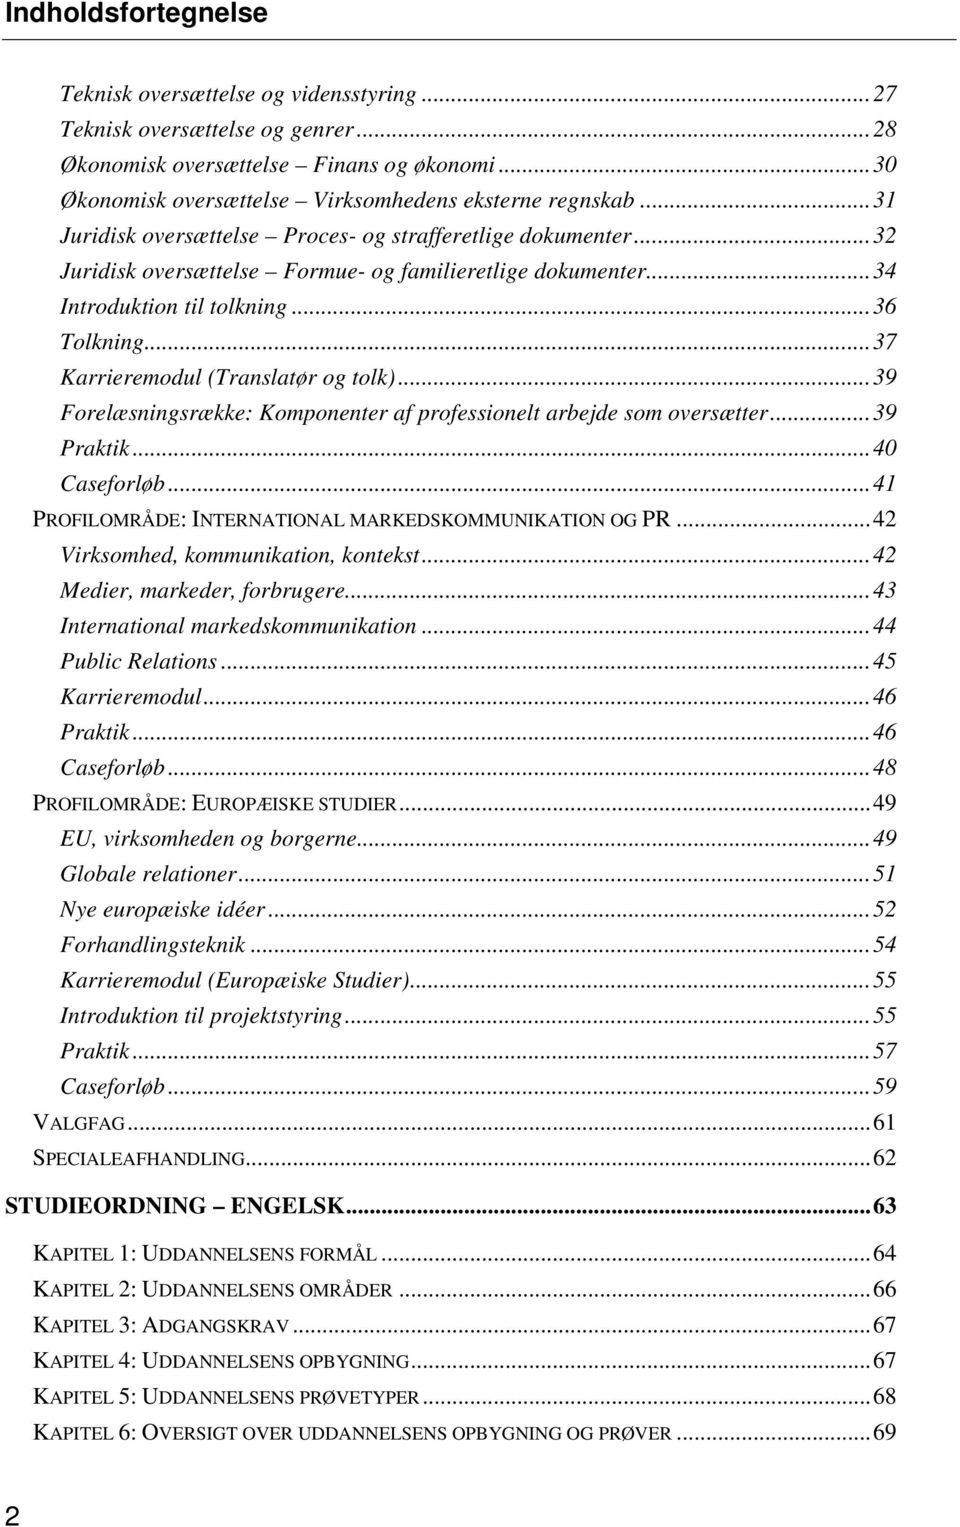 ..37 Karrieremodul (Translatør og tolk)...39 Forelæsningsrække: Komponenter af professionelt arbejde som oversætter...39 Praktik...40 Caseforløb.